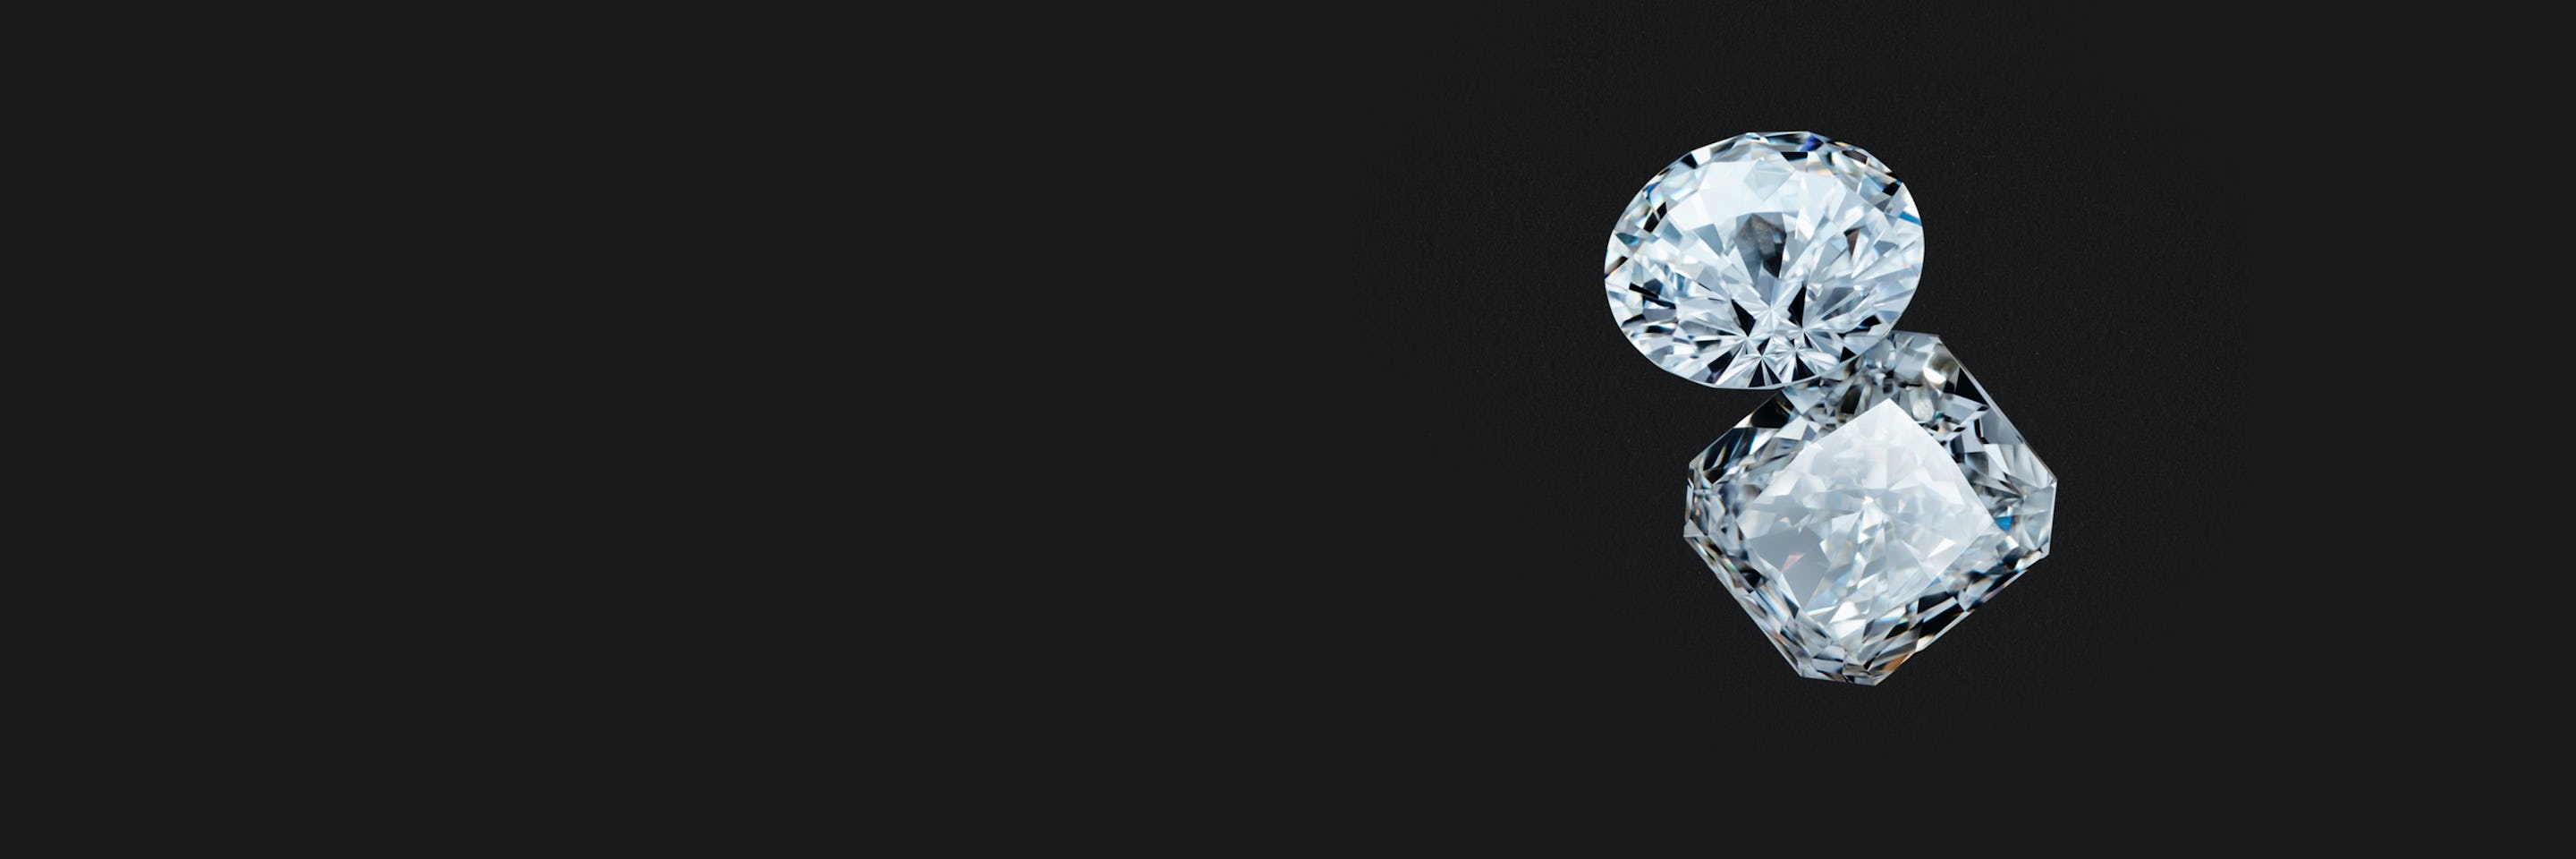 Future of Diamonds: Lab Grown Diamonds Spain